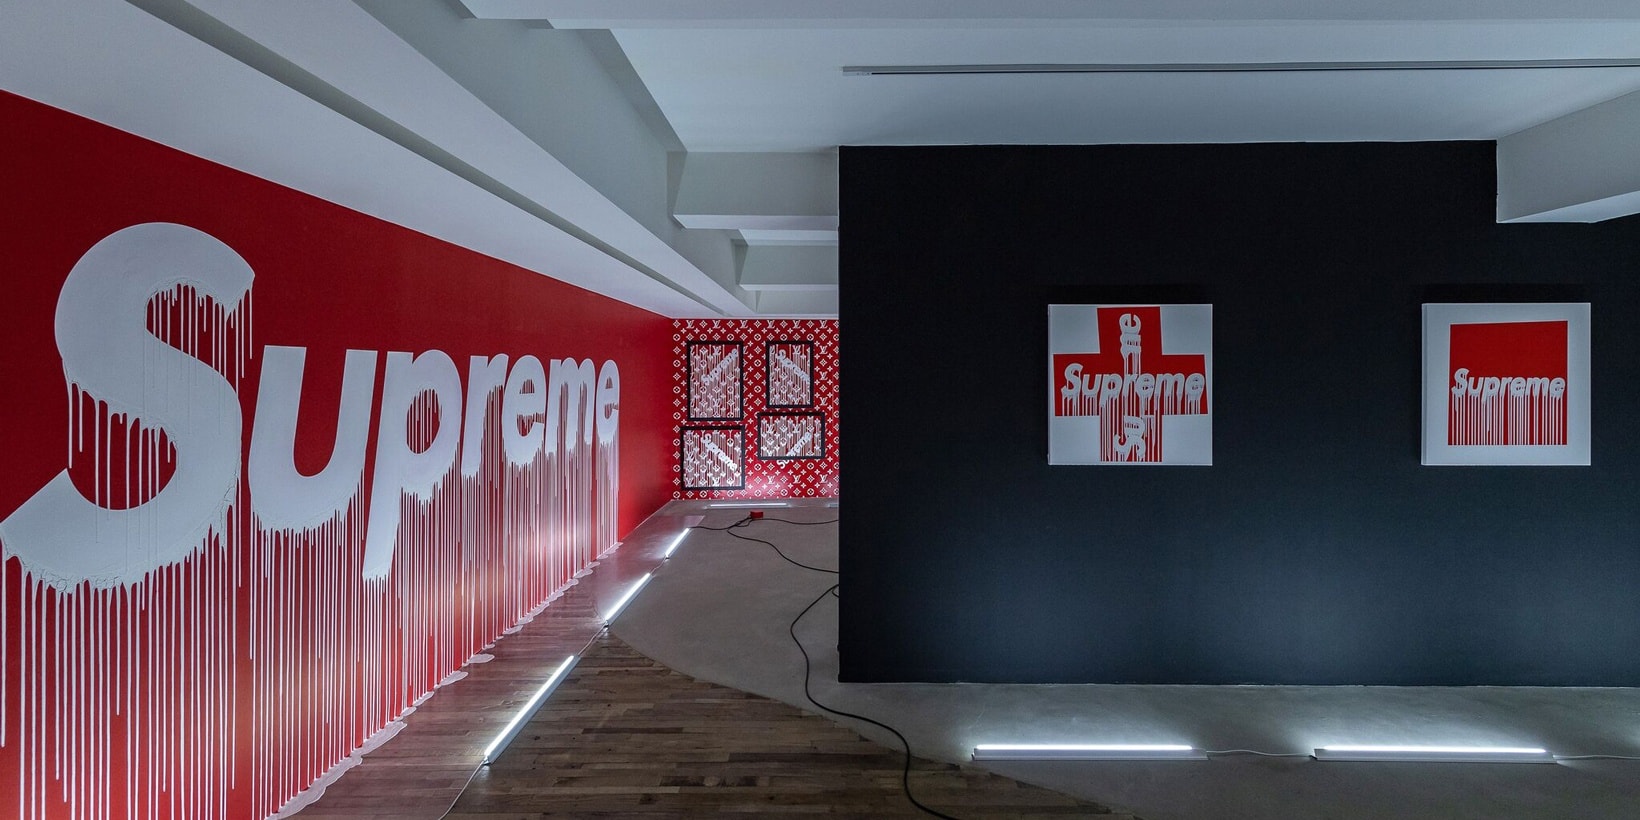 法國藝術家 Zevs 於香港舉辦「Supreme Même」展覽